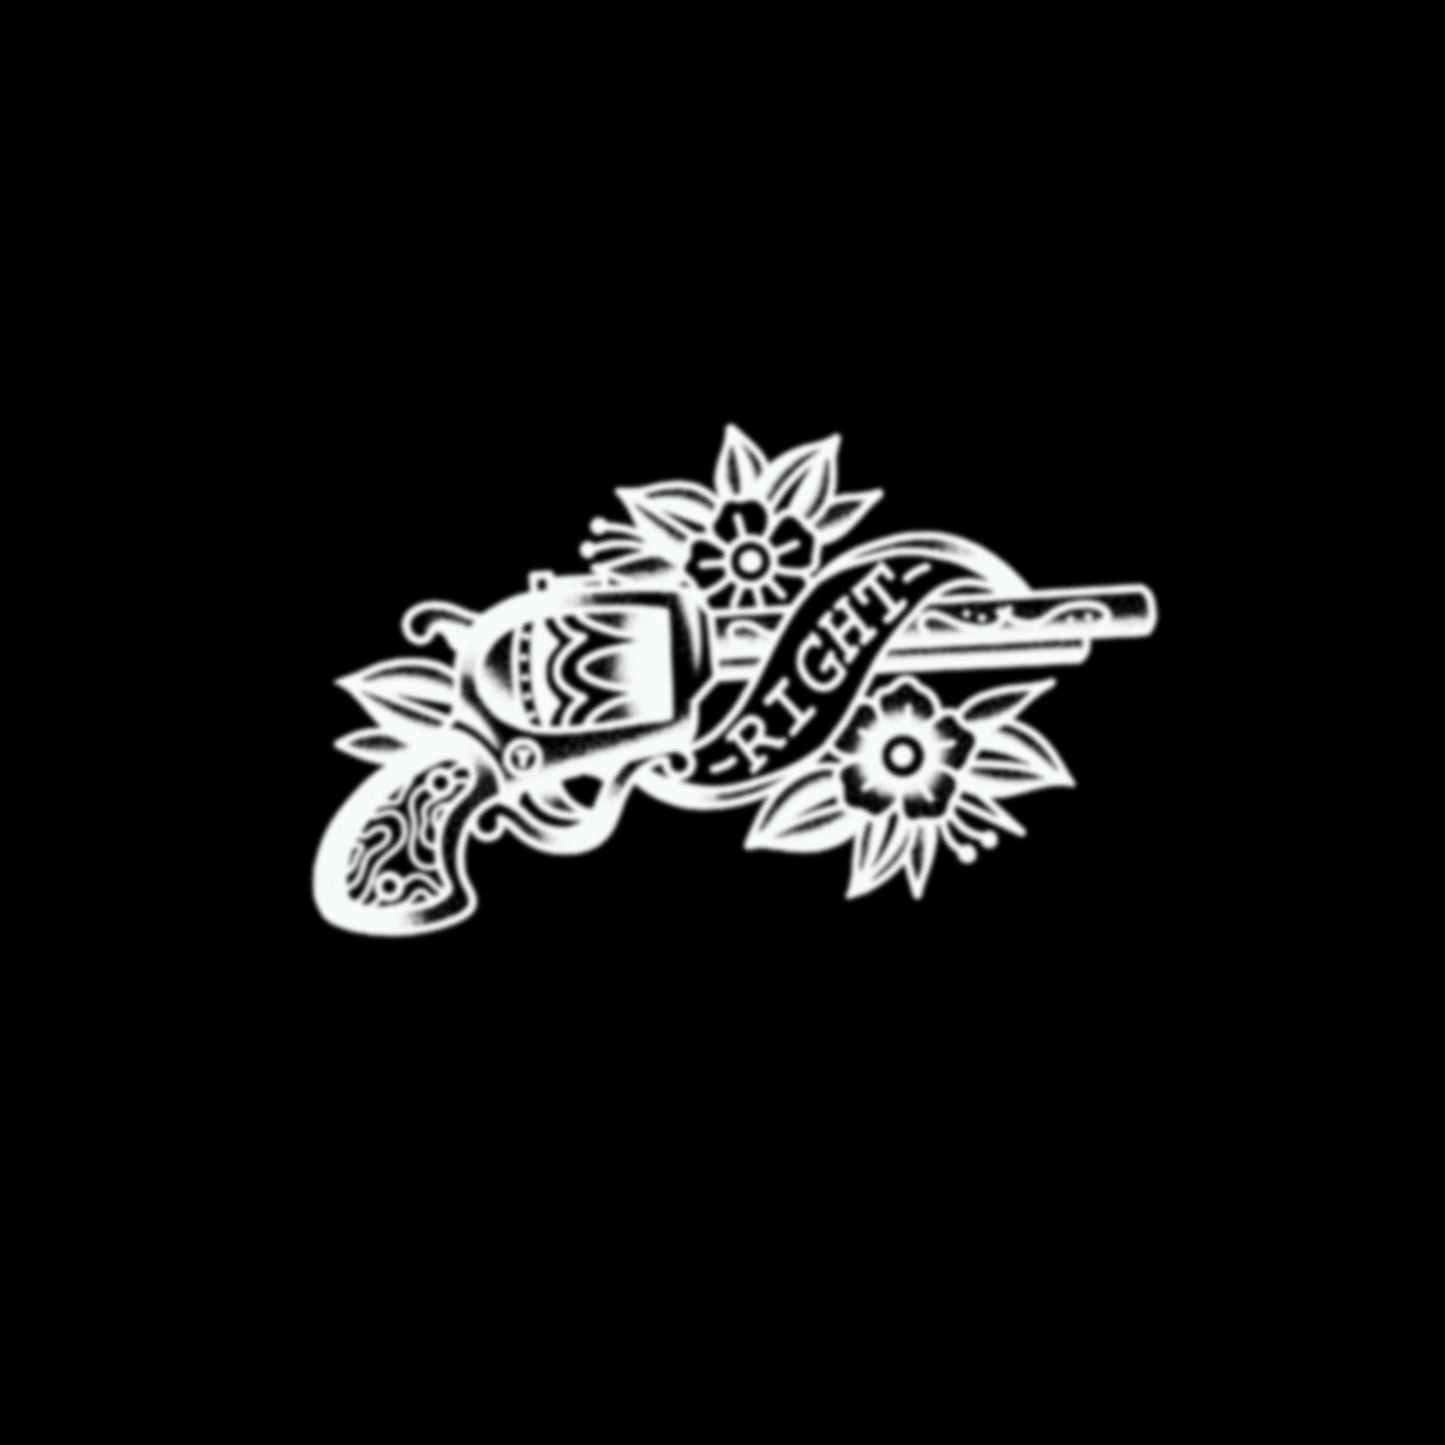 Weapon&Flower Semi-Permanent Tattoo - StiCool